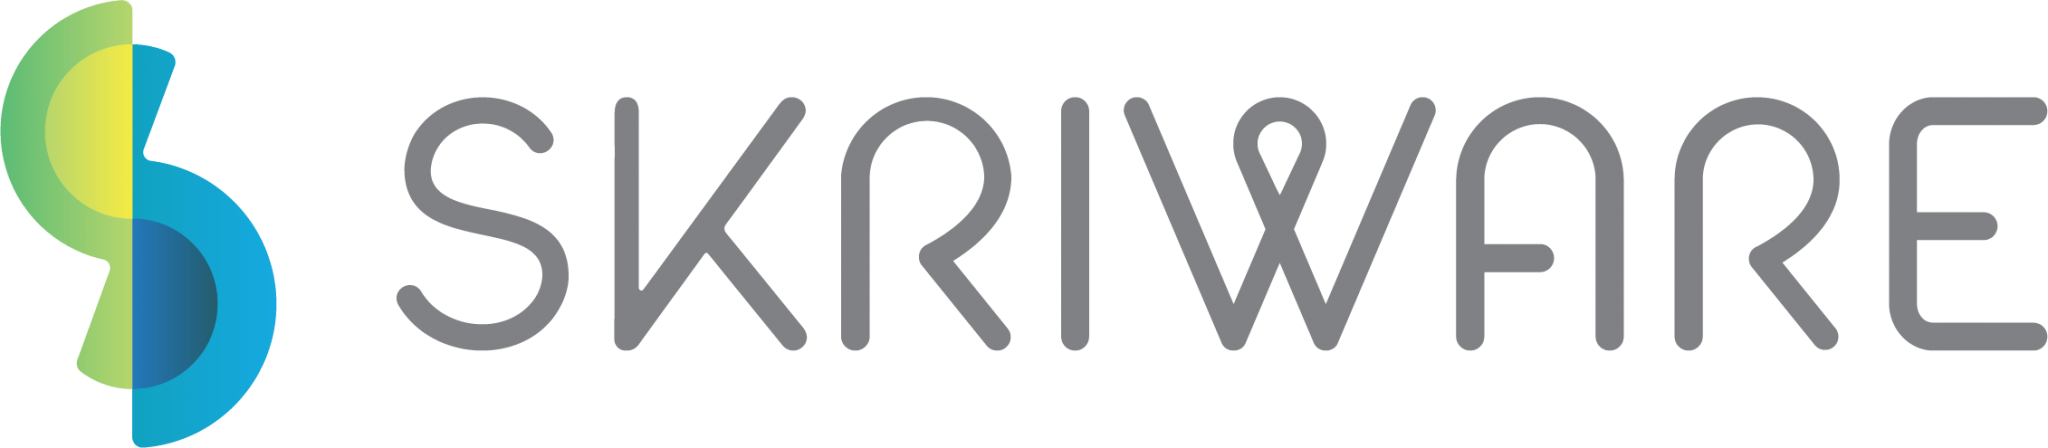 logo skriware